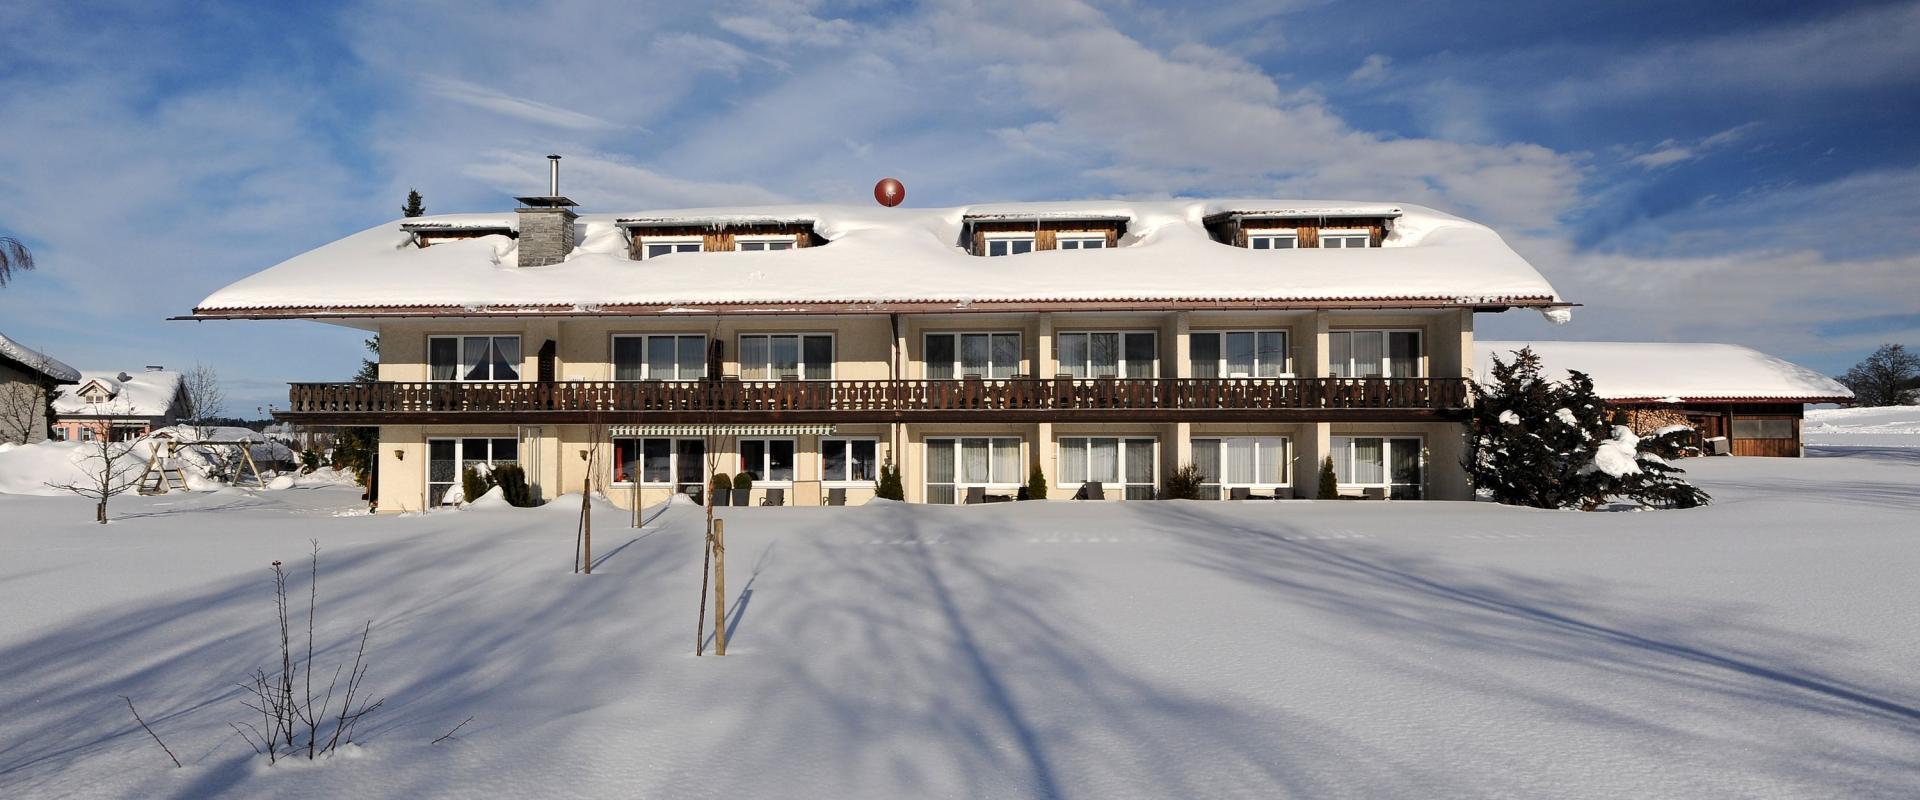 Aussenansicht des Hotel Bergblick im Winter